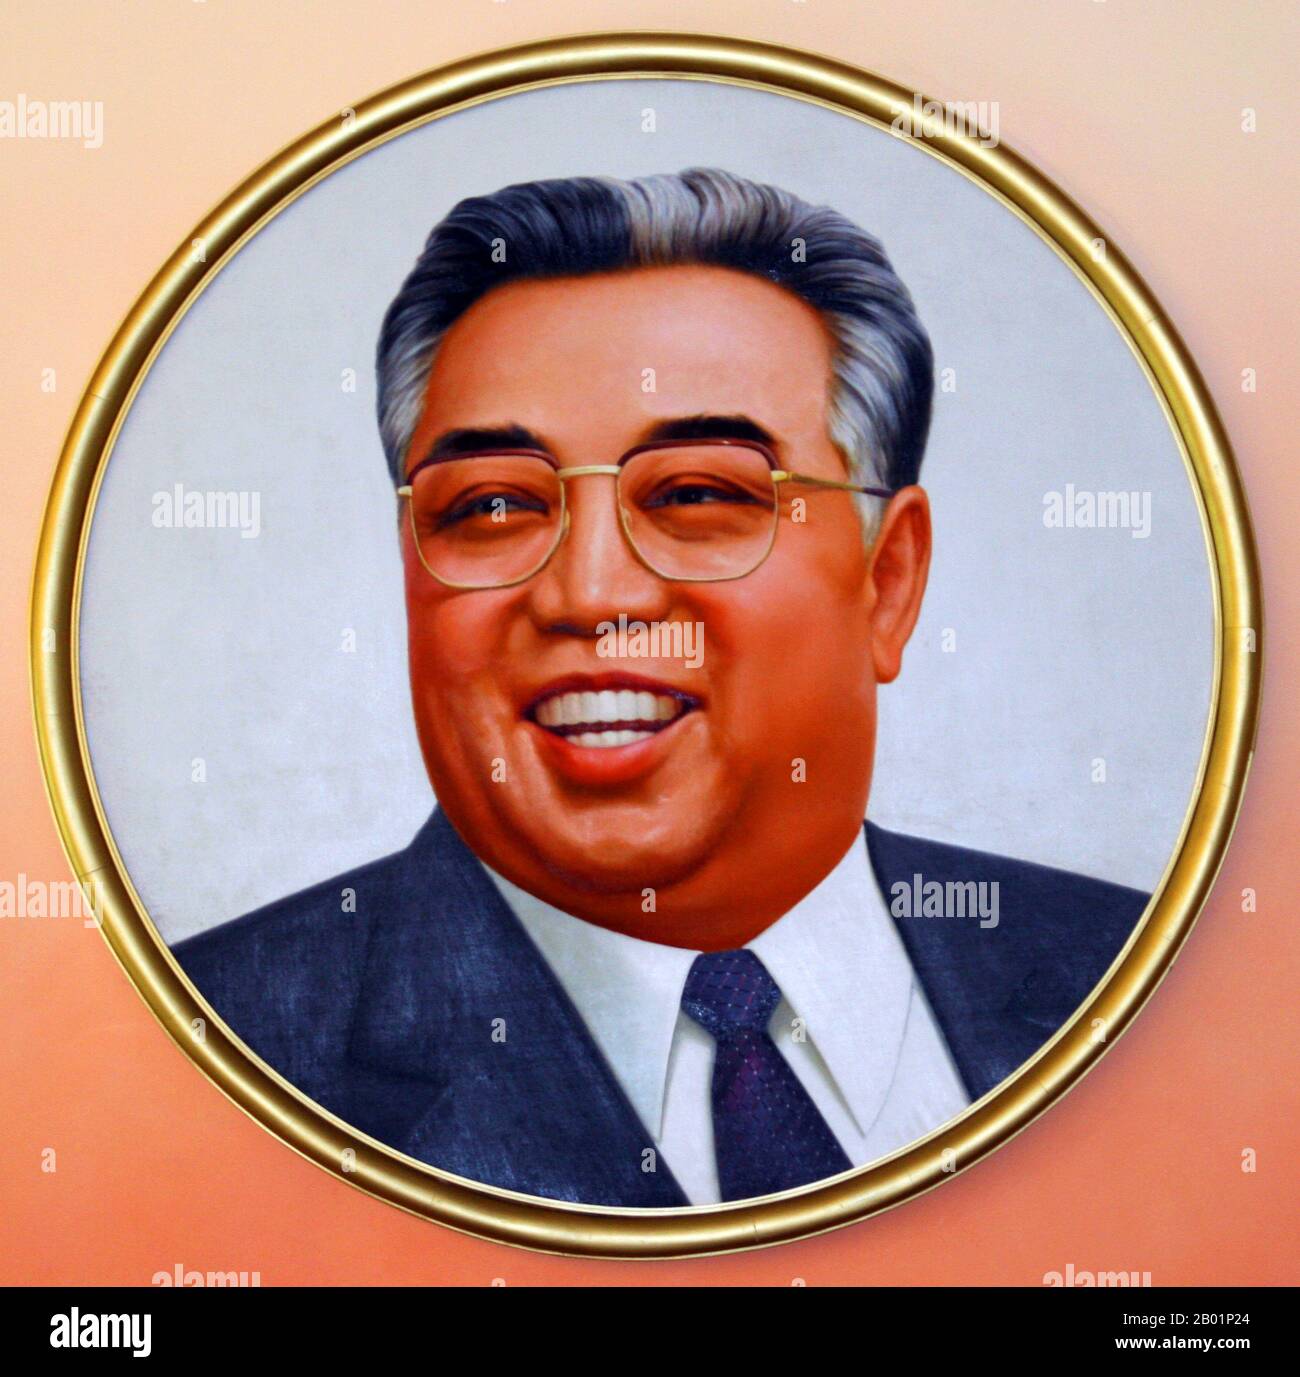 Korea: Nordkoreas 'großer Führer' Kim Il Sung (15. April 1912 - 8. Juli 1994), Oberherrscher der Demokratischen Volksrepublik Korea (DVRK) zwischen 1948 und 1994. Offizielles Porträt, Foto von Gilad Rom (CC BY-SA 3,0 Lizenz). Kim Il-sung war ein koreanischer kommunistischer Politiker, der Nordkorea, offiziell die Demokratische Volksrepublik Korea, von seiner Gründung 1948 bis zu seinem Tod 1994 regierte. Von 1948 bis 1972 war er Premierminister und von 1972 bis zu seinem Tod Präsident. Von 1949 bis 1994 war er Vorsitzender der Arbeiterpartei Koreas. Stockfoto